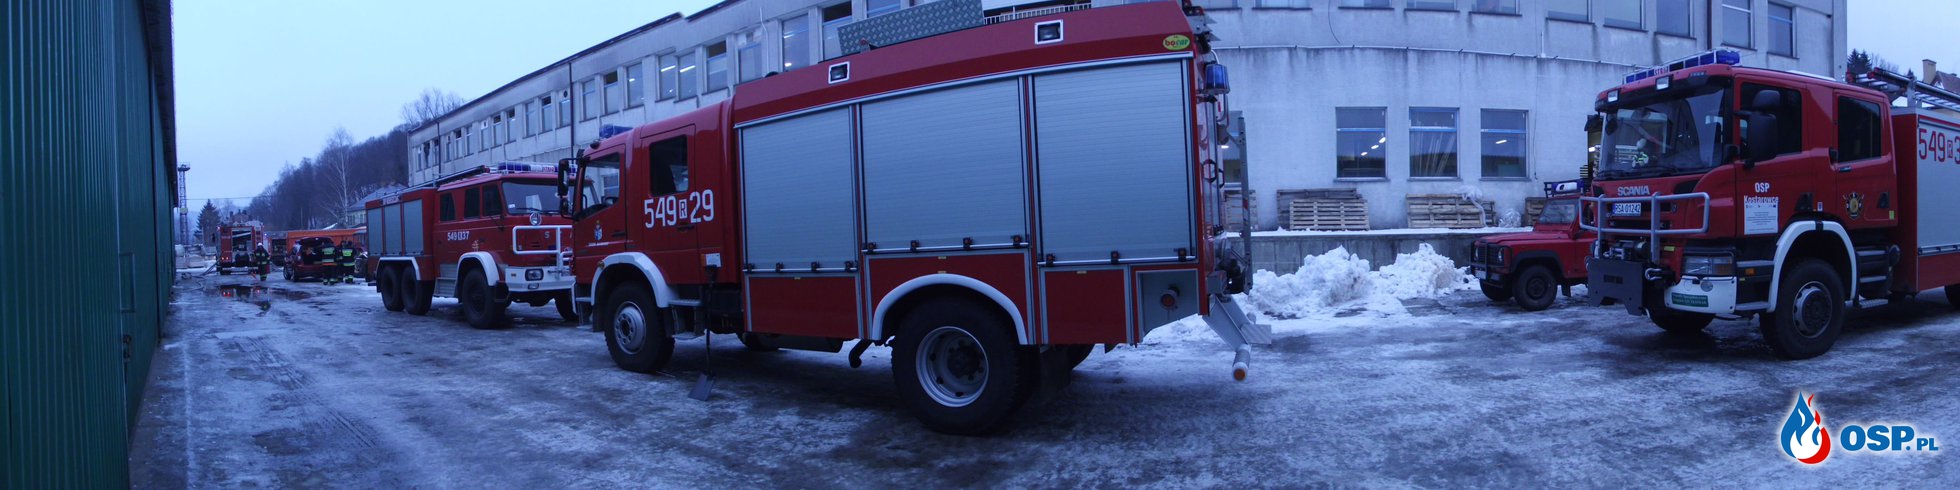 W przeddzień Wigiliii siedem zastępów straży pożarnej zadysponowanych do pożaru w zakładzie produkcji drzewnej w Zagórzu OSP Ochotnicza Straż Pożarna